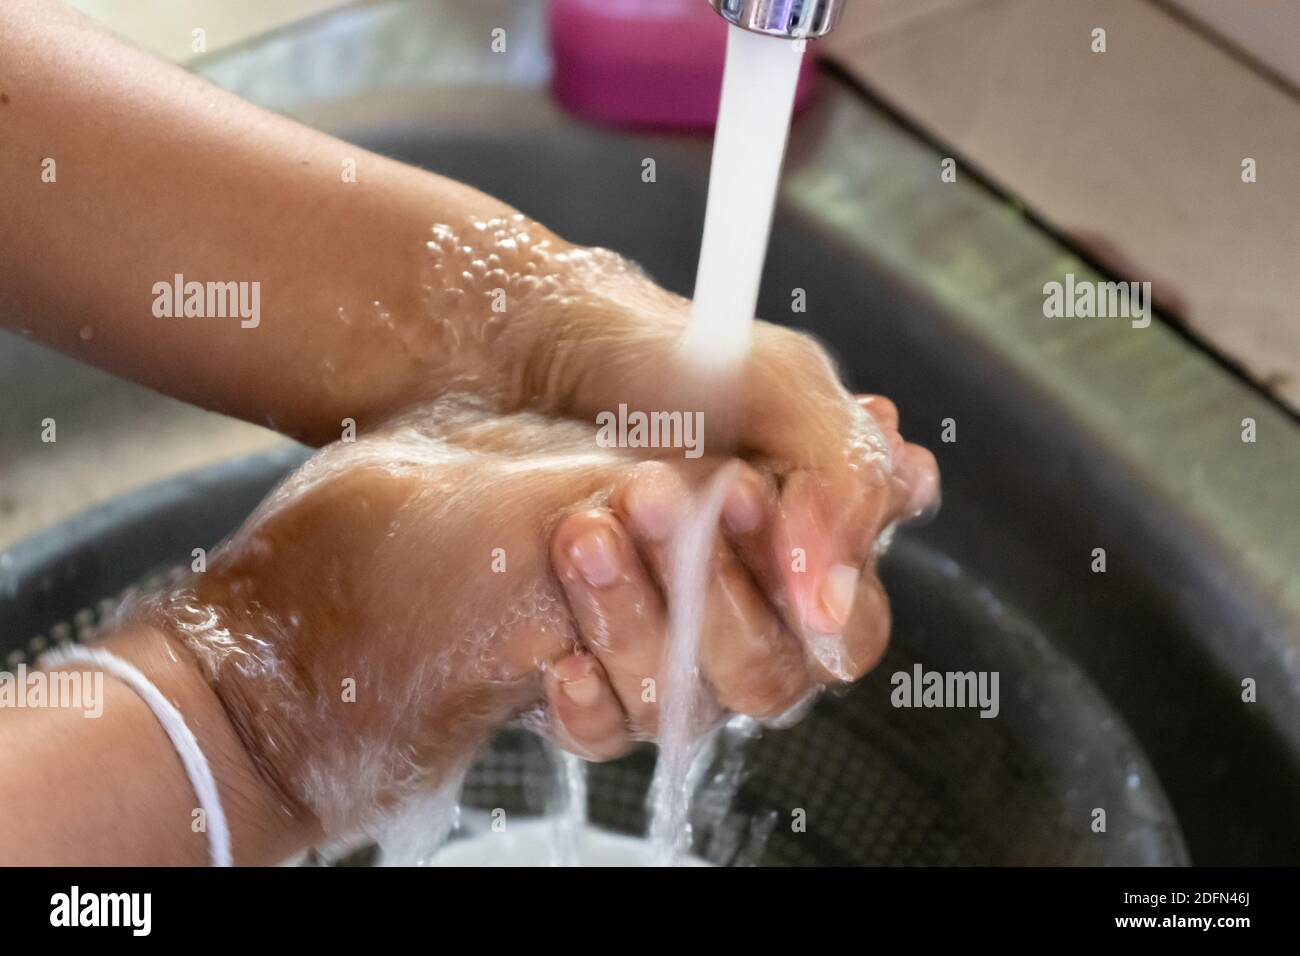 aplicar jabón y lavar con agua corriente limpia Foto de stock